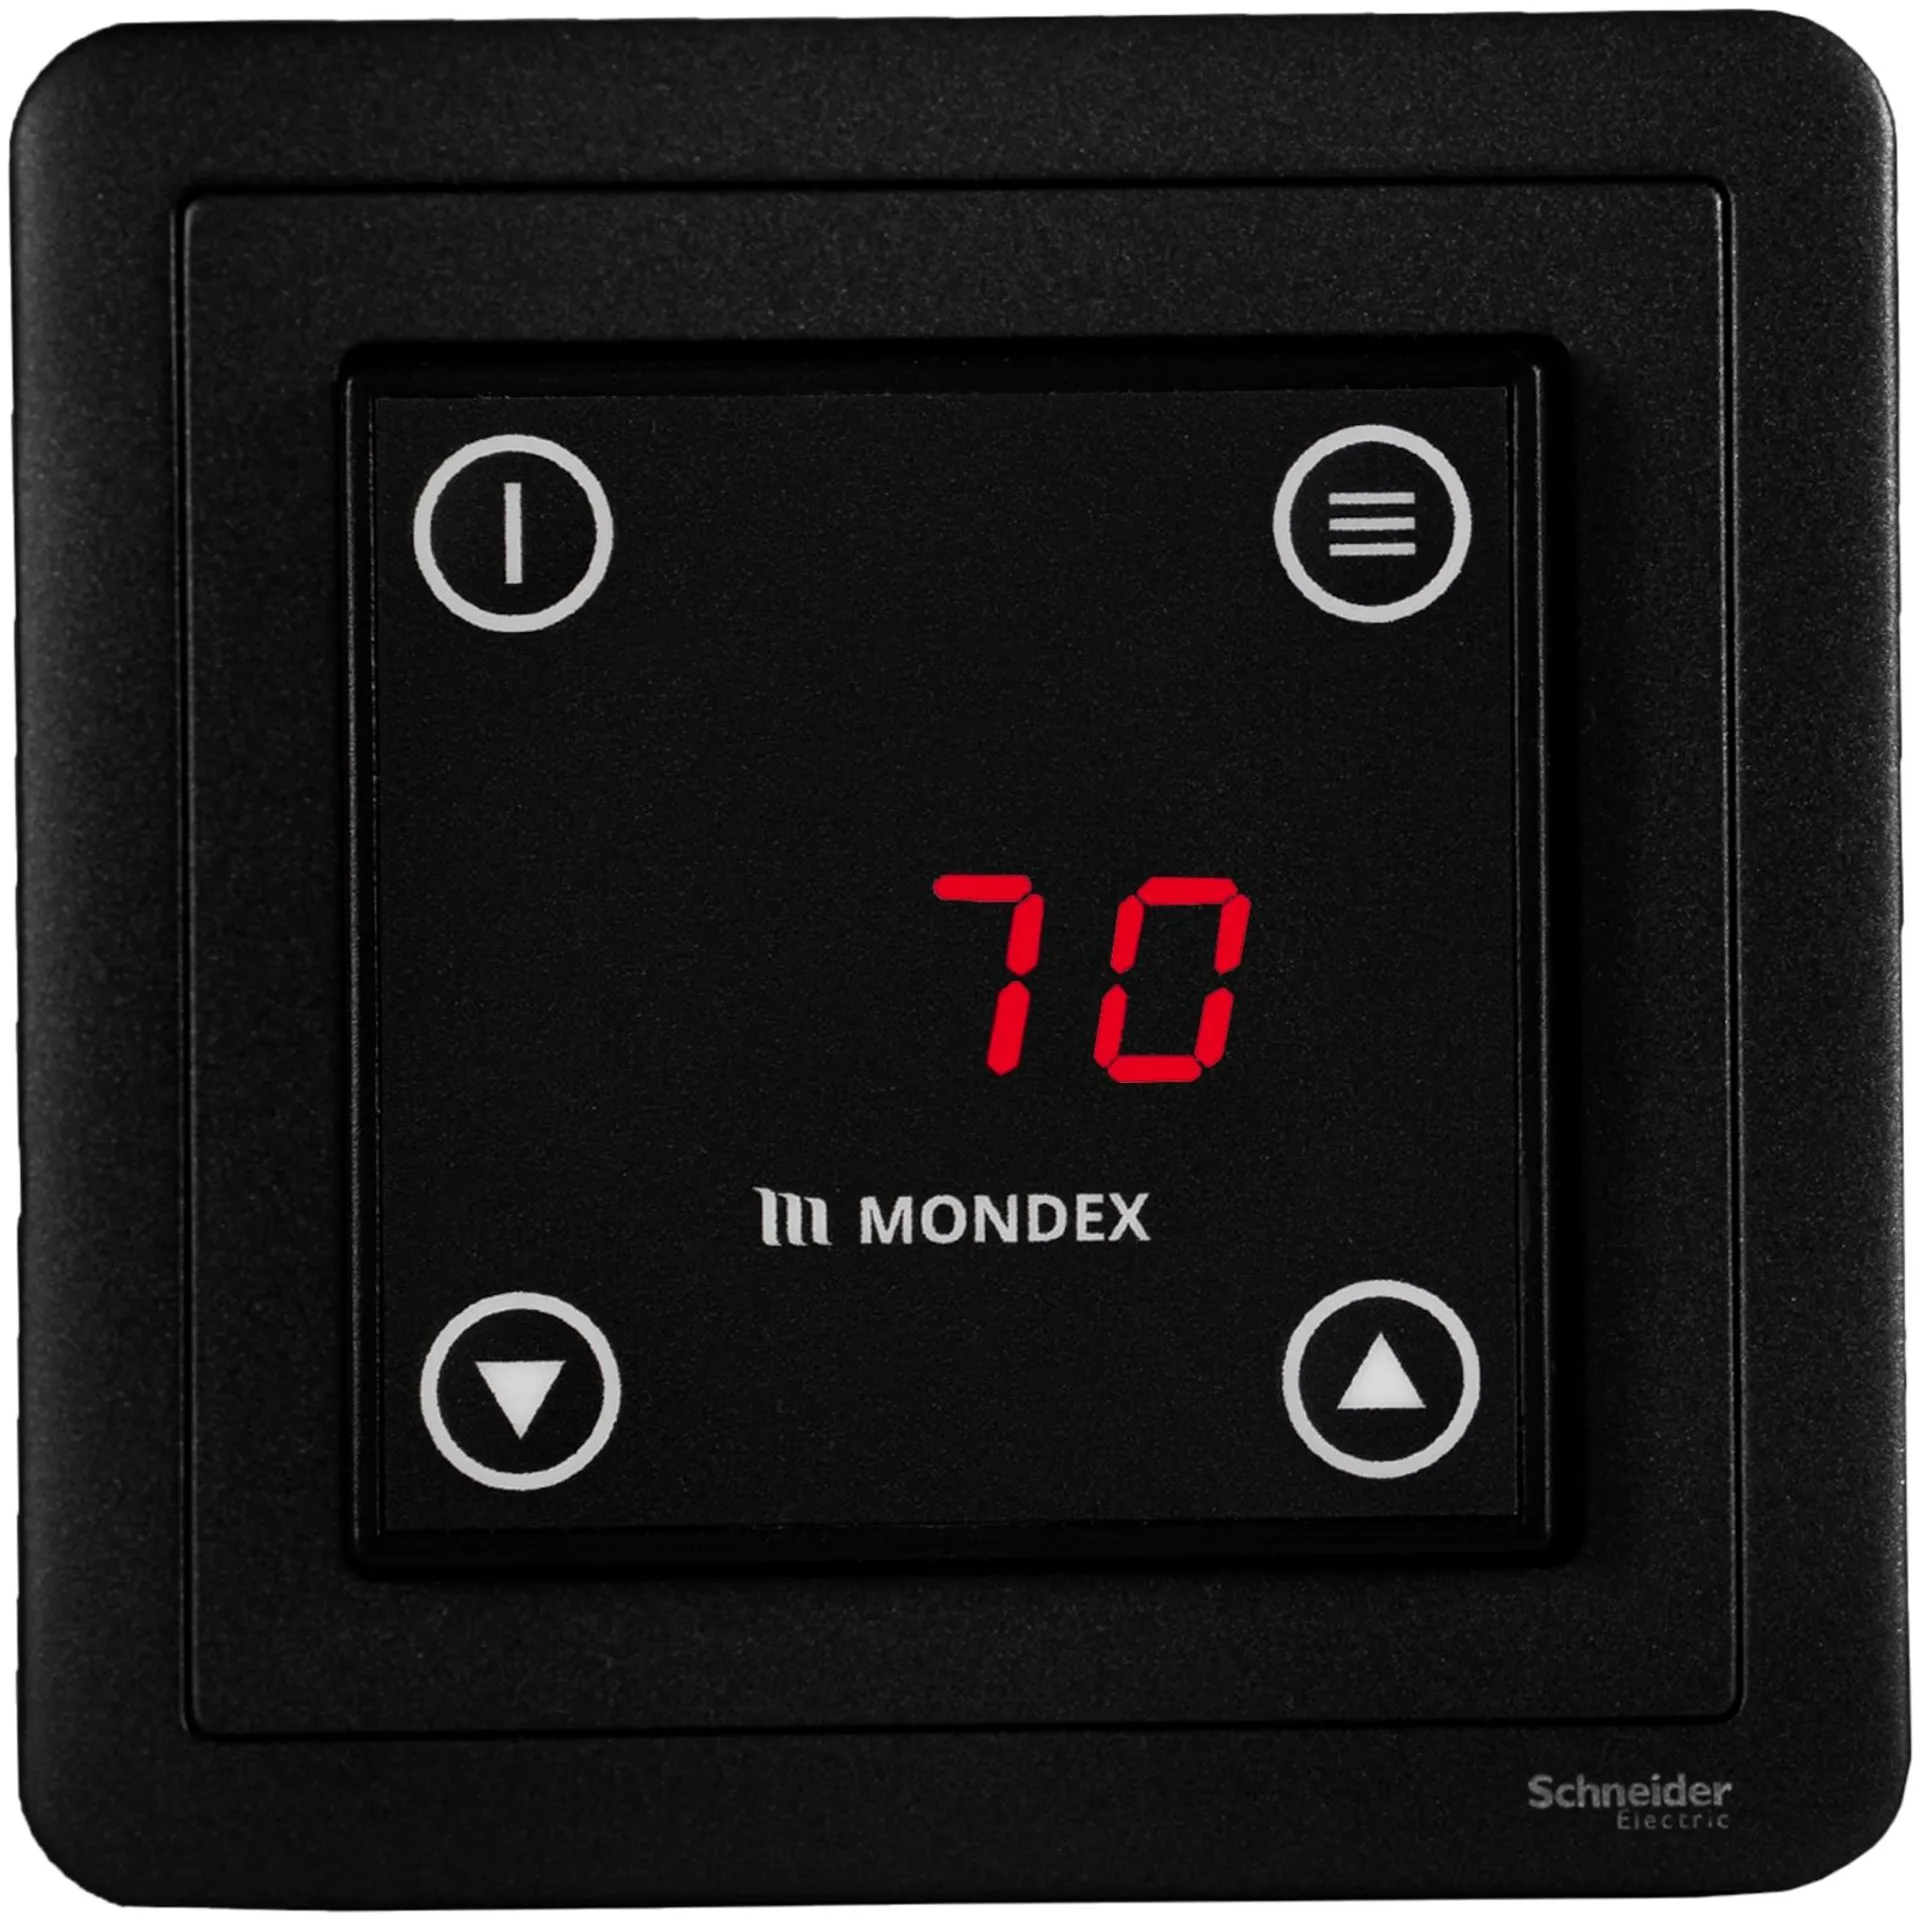 Sähkökiuas Mondex Hiisi E2 6.6 KW - 2